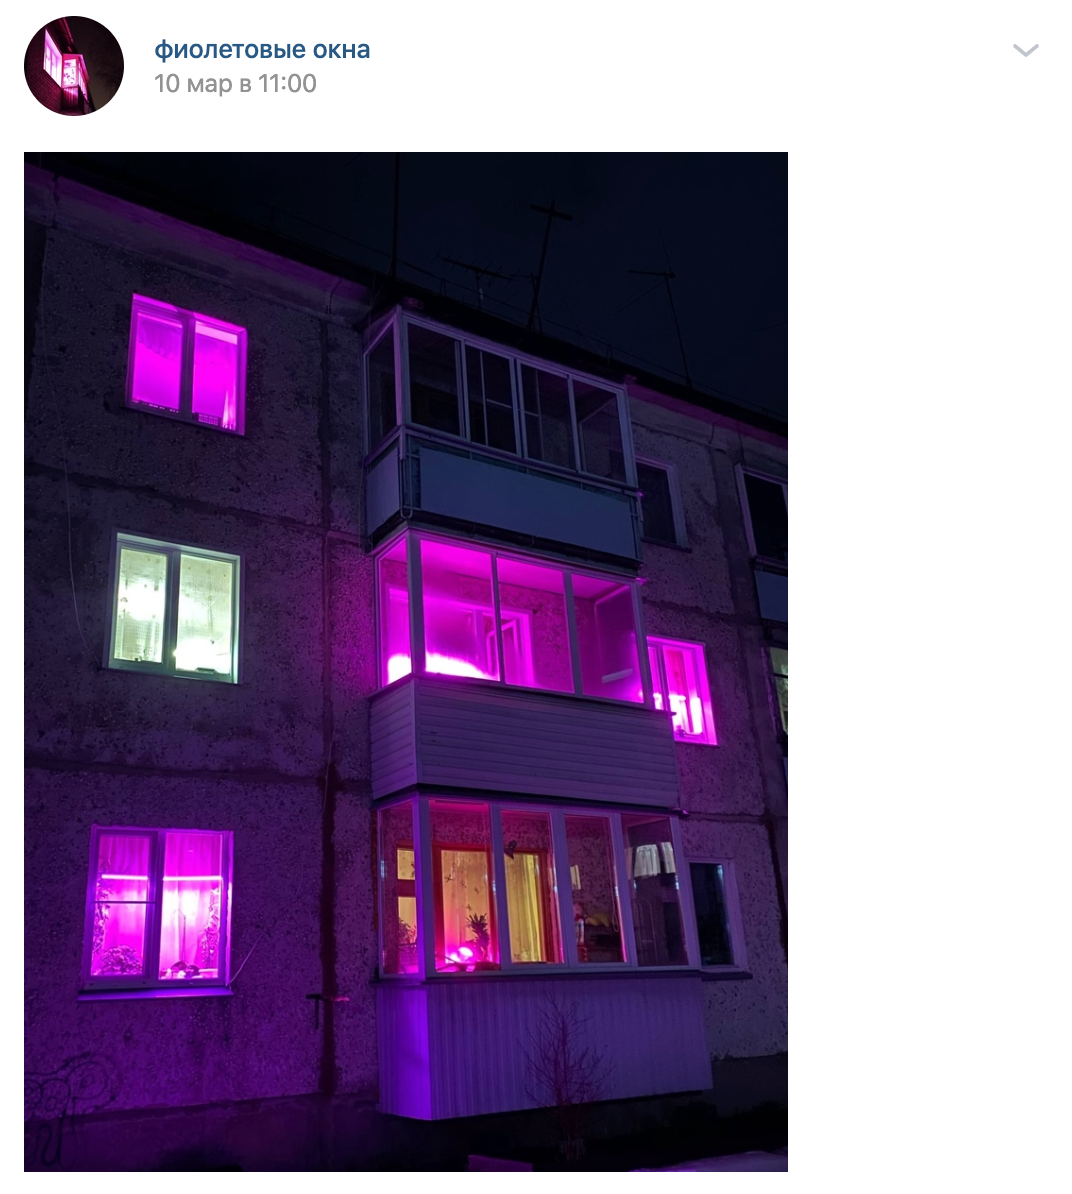 Розовый свет в окнах. Фиолетовые окна. Розовый свет в окнах жилых домов. Фиолетовые окна в домах. Розовый свет в окнах жилых